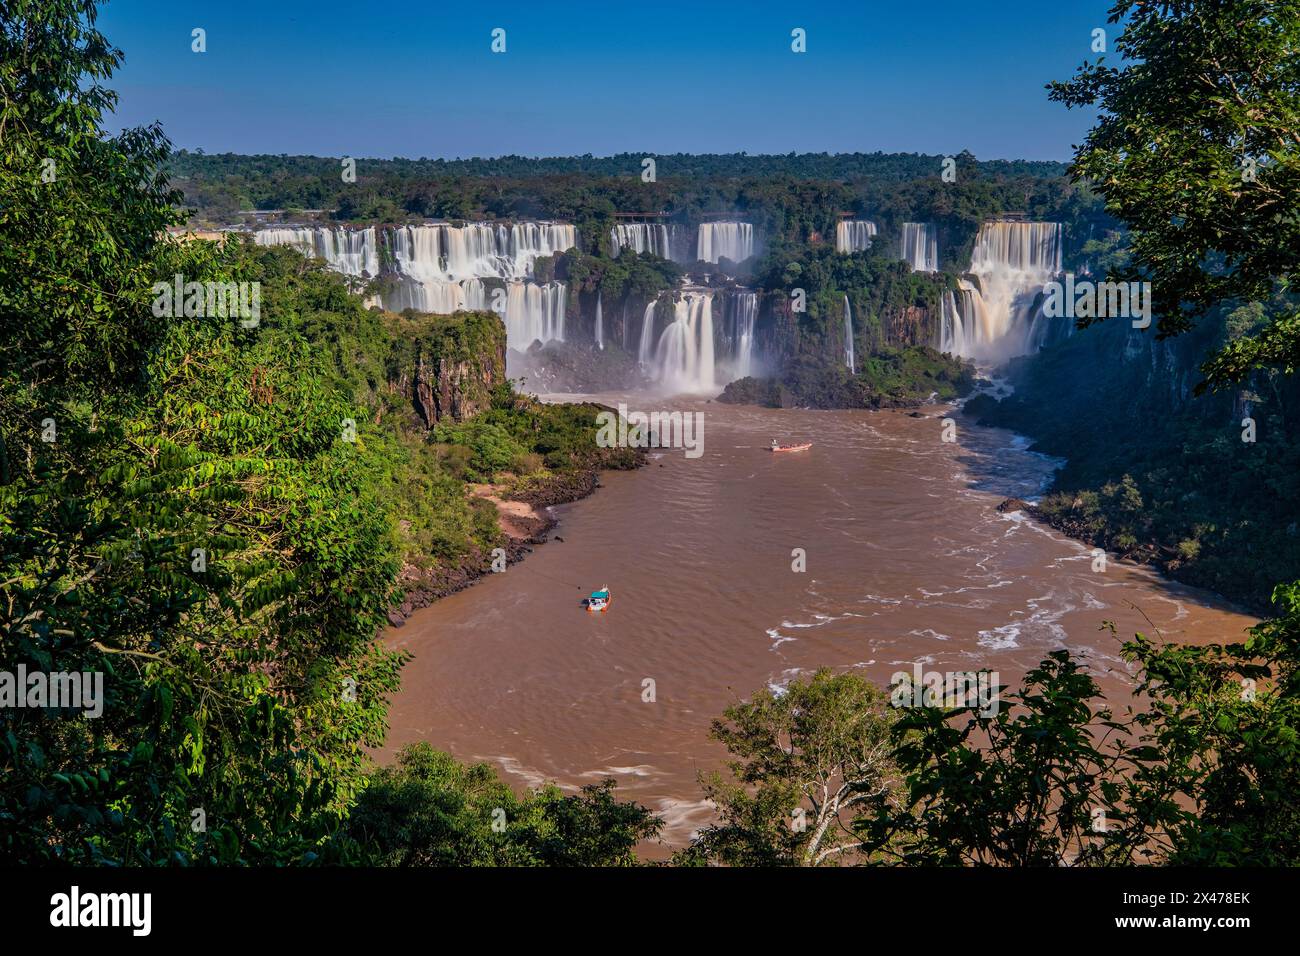 Entlang der argentinisch-brasilianischen Grenze gelegen, weist Iguazu normalerweise etwa 275 separate Wasserfälle auf, die jedoch zwischen 150 und 300 d variieren können Stockfoto